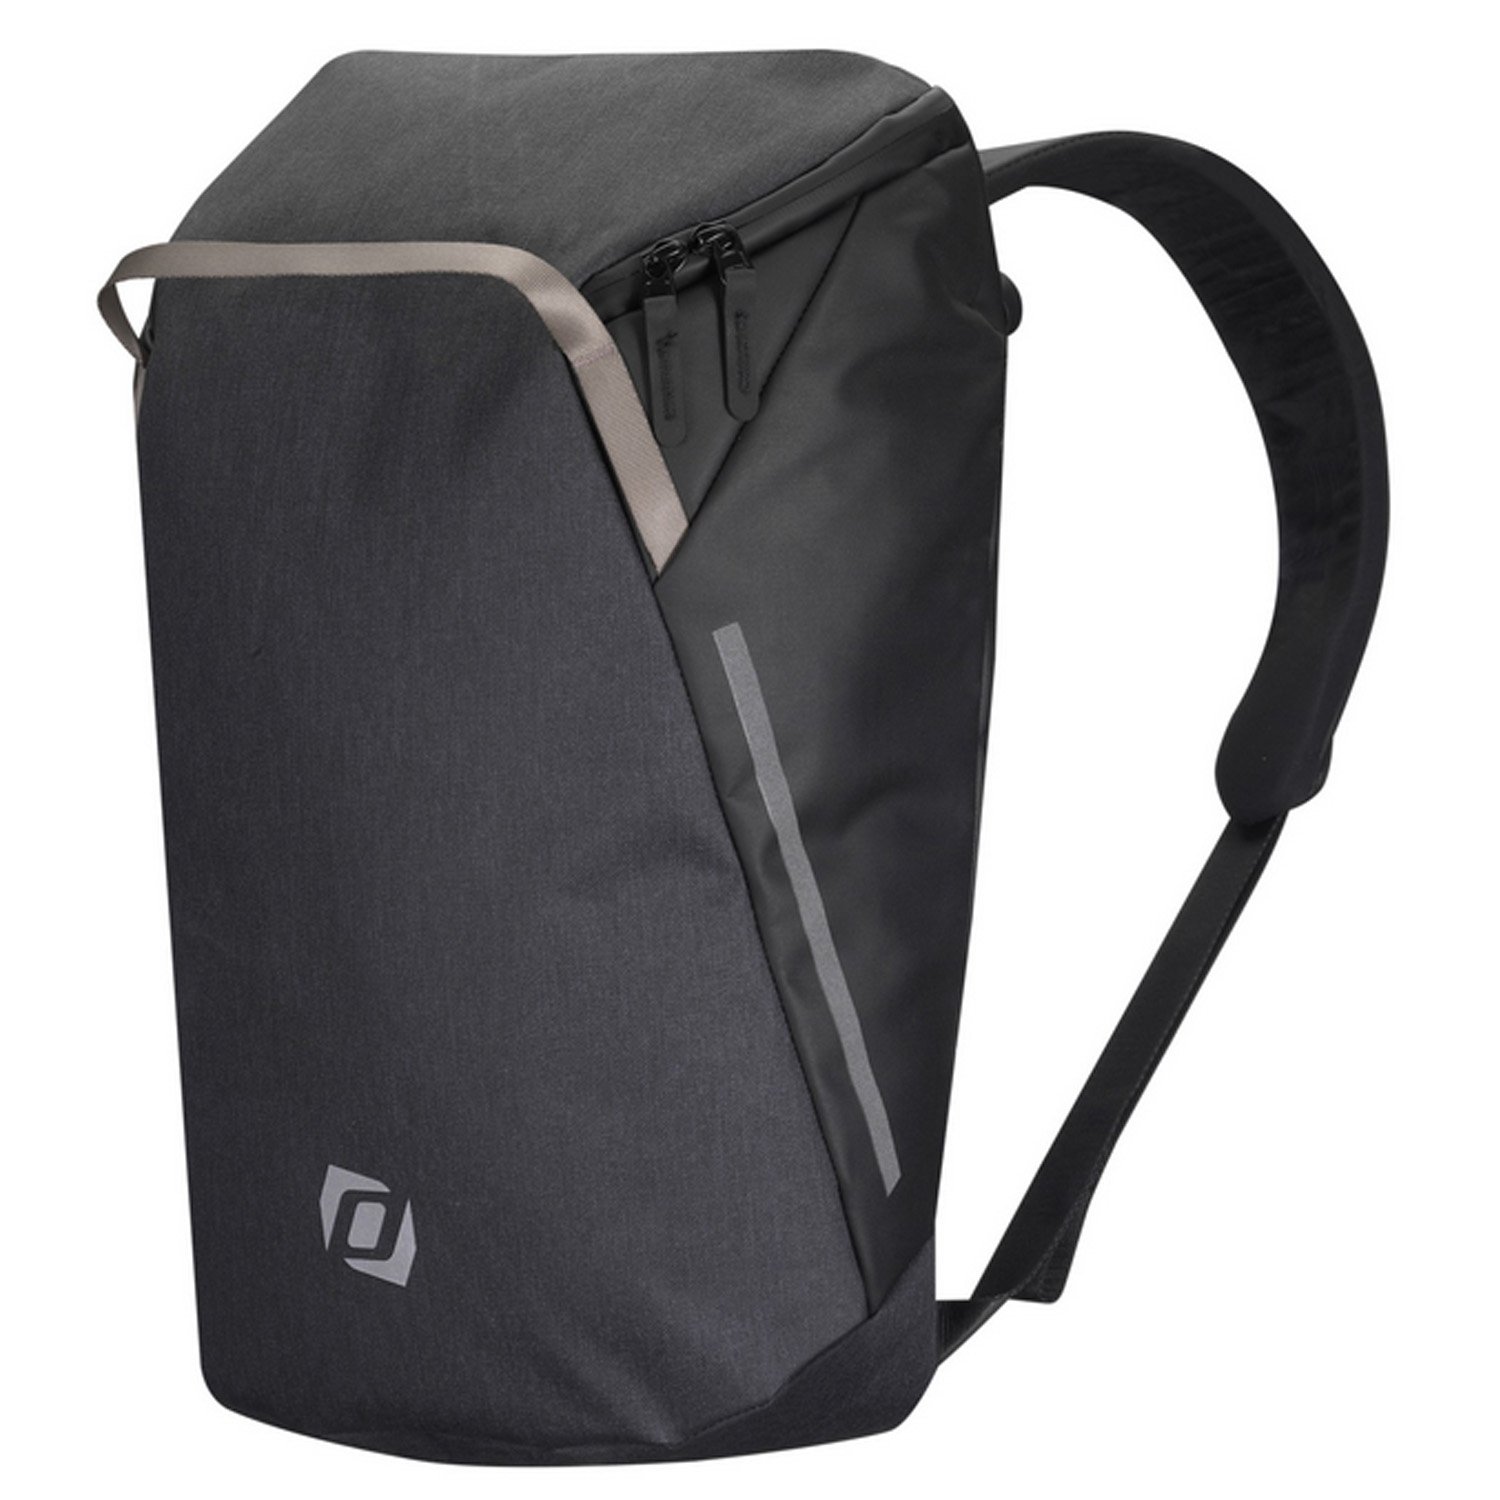 Велосумка Syncros Backpack, для багажника, черный, ES281116-0001 аквабот hoverbot взрослый глубина погружения 20 м aqua1